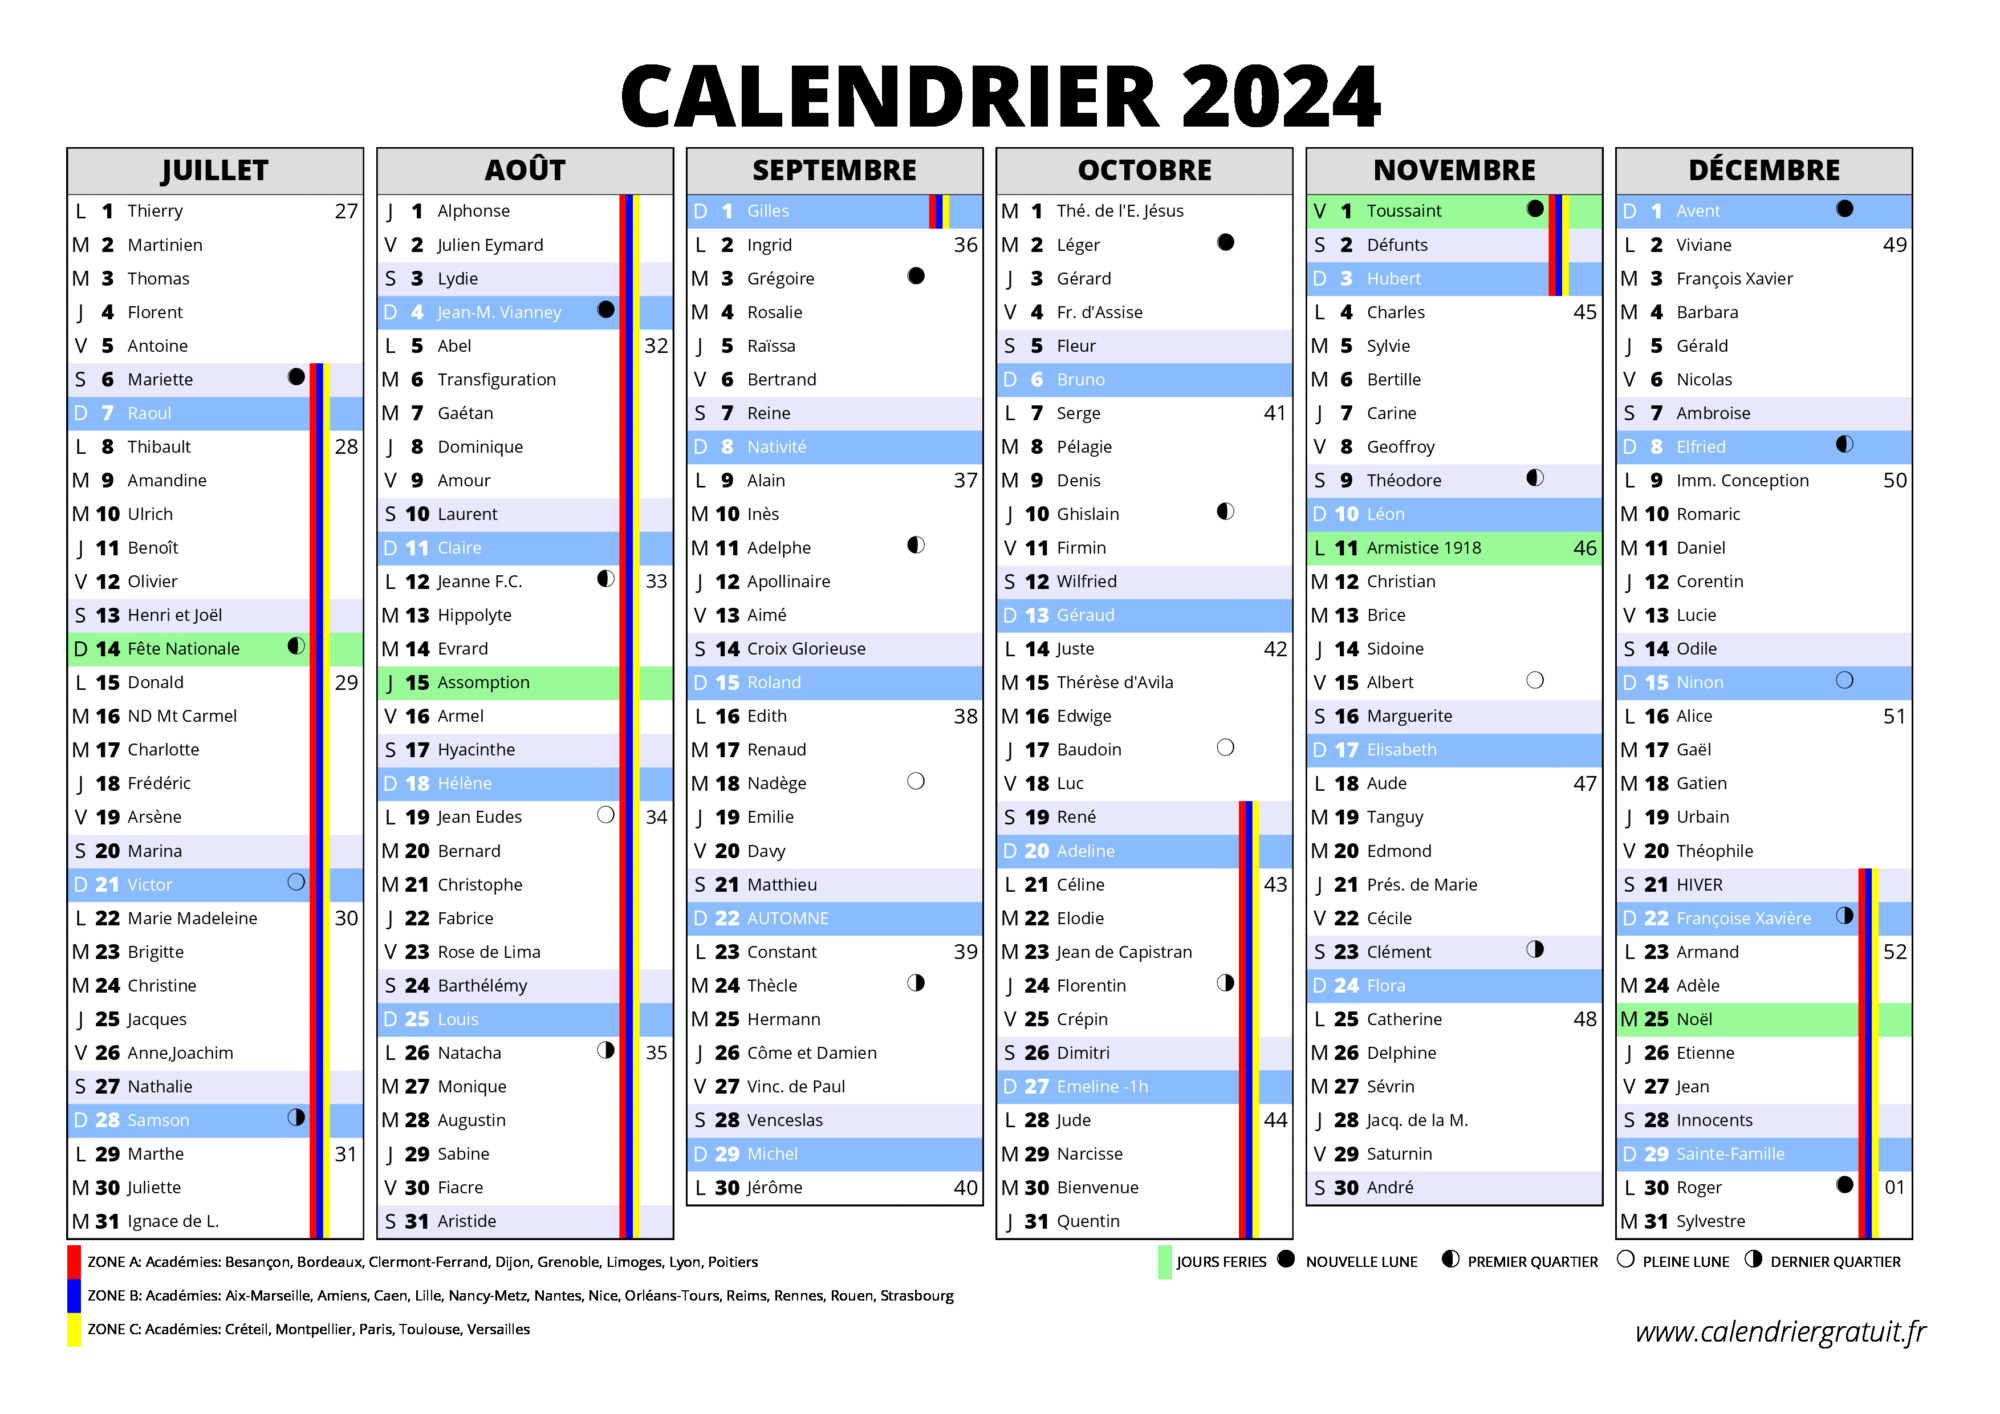 Calendrier 2024 - AriaATR